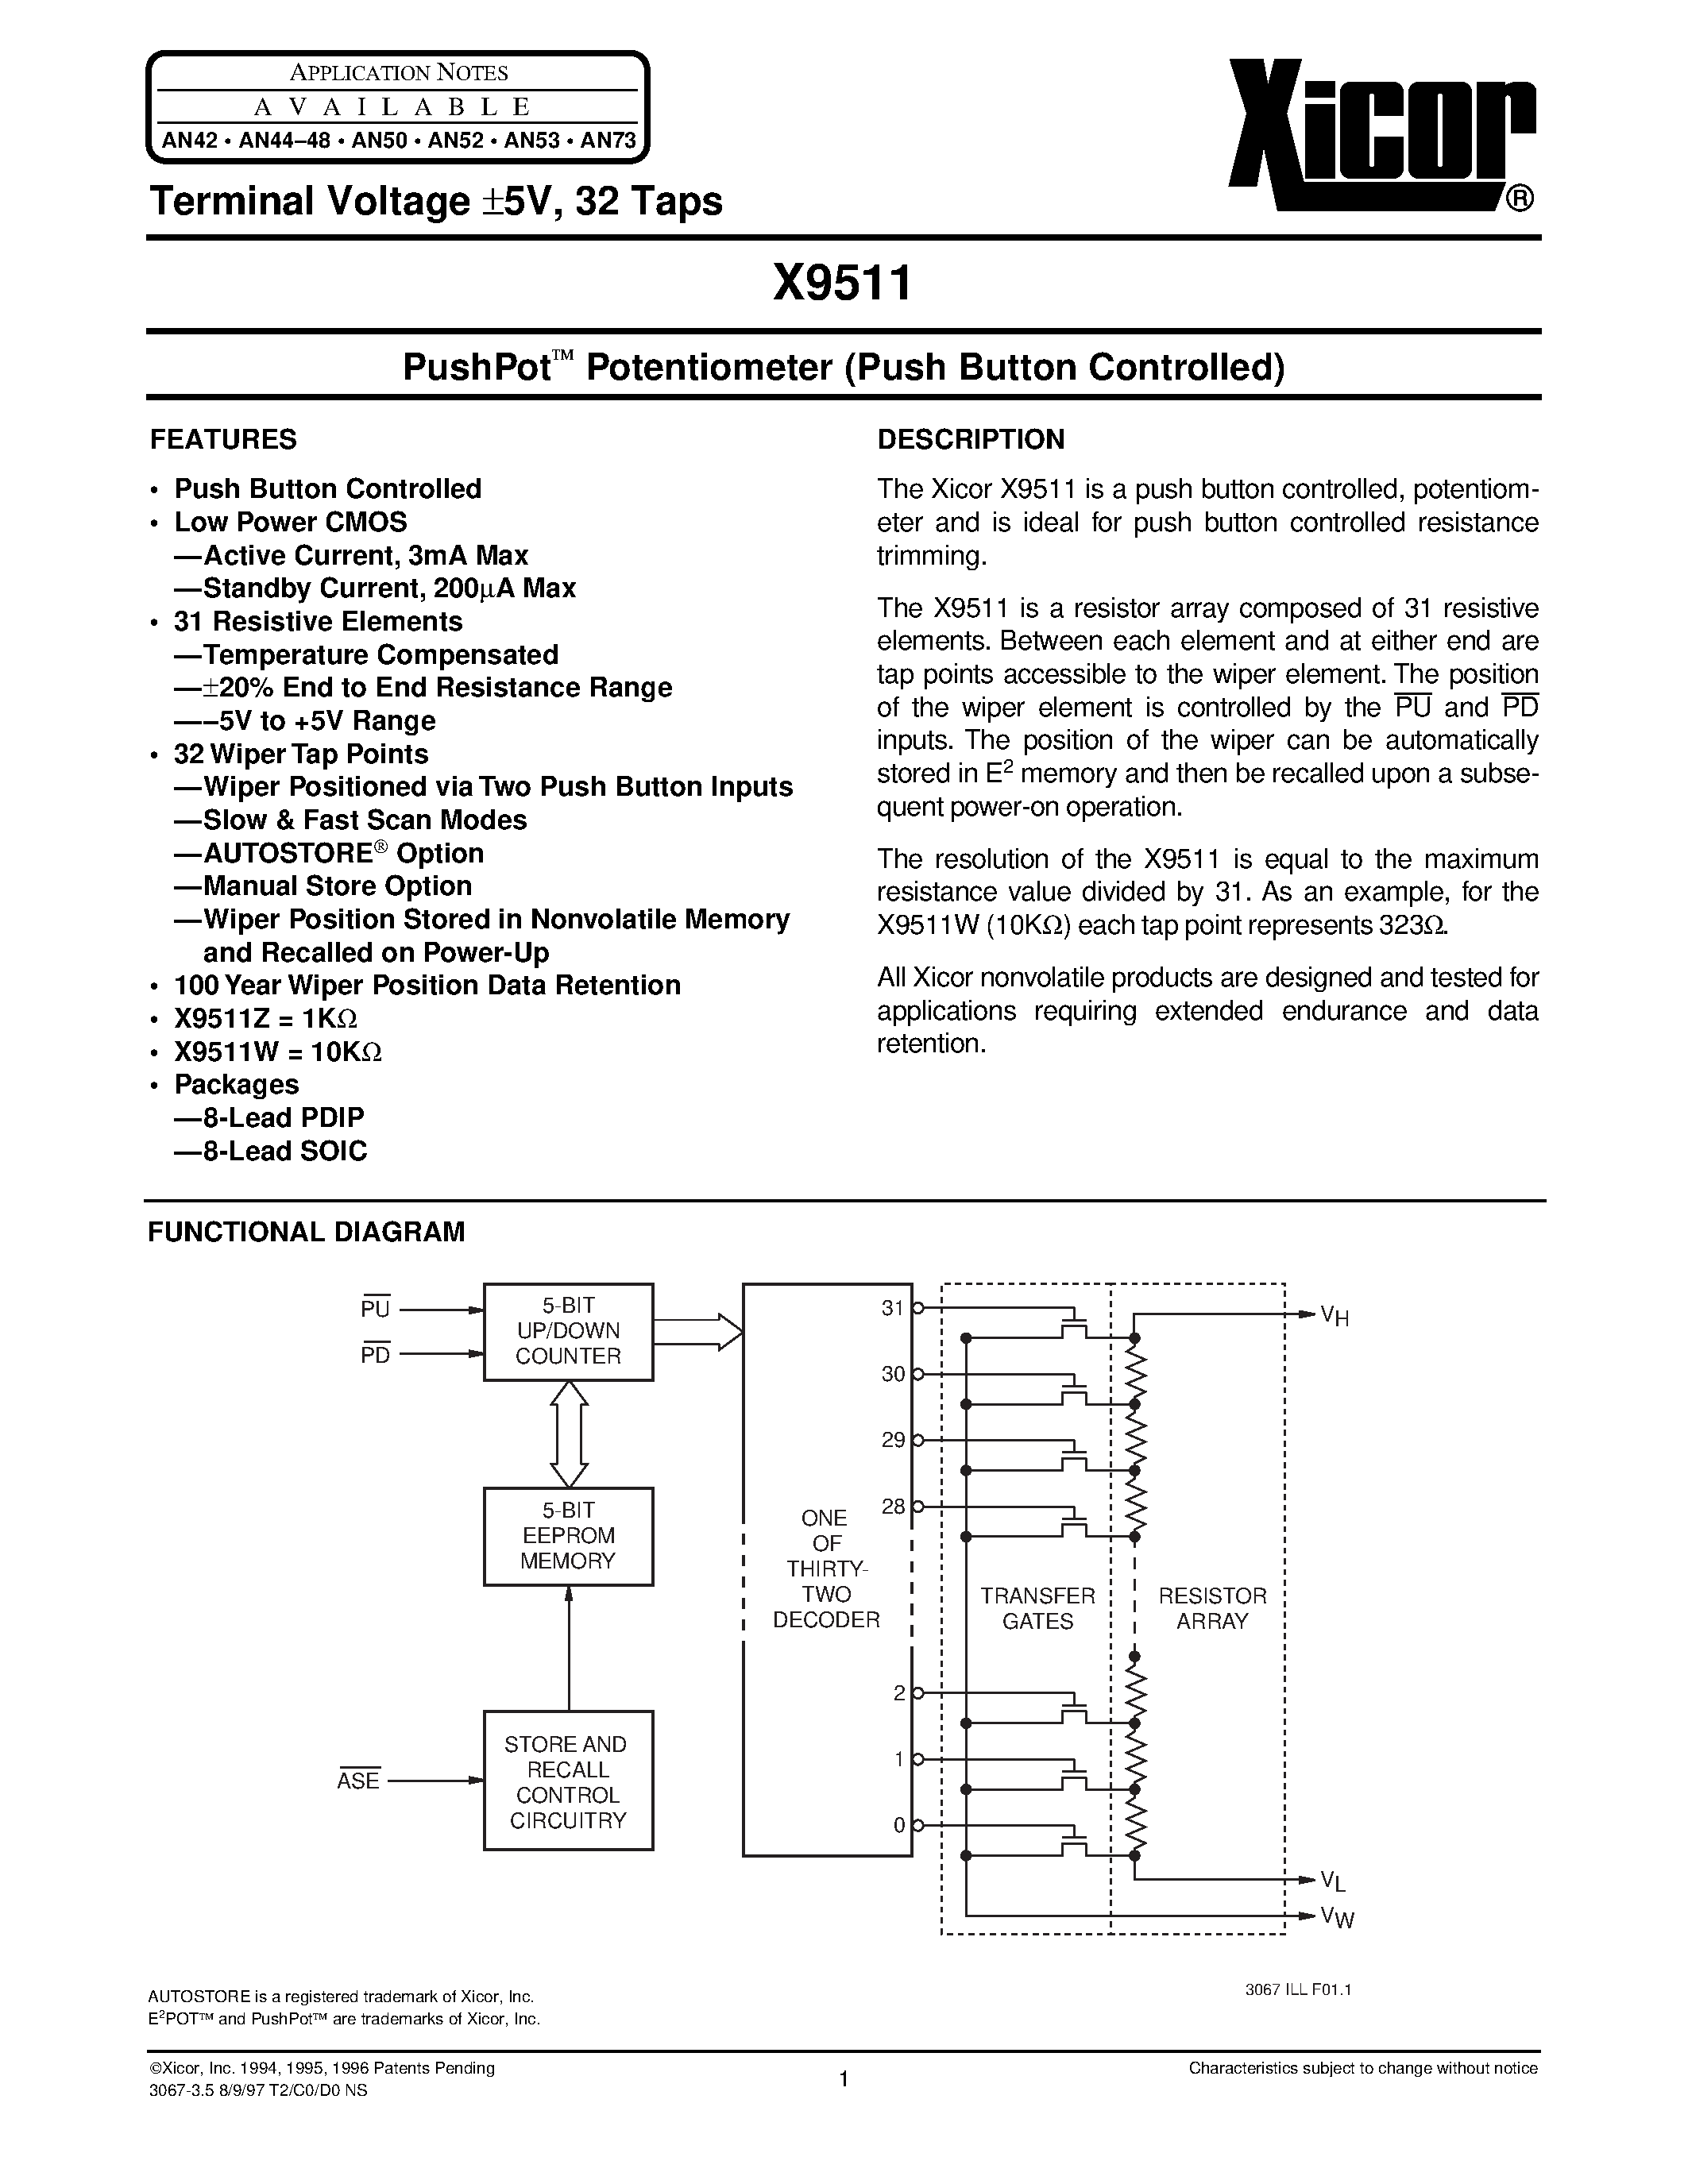 Даташит X9511WPI - PushPot O Potentiometer (Push Button Controlled) страница 1